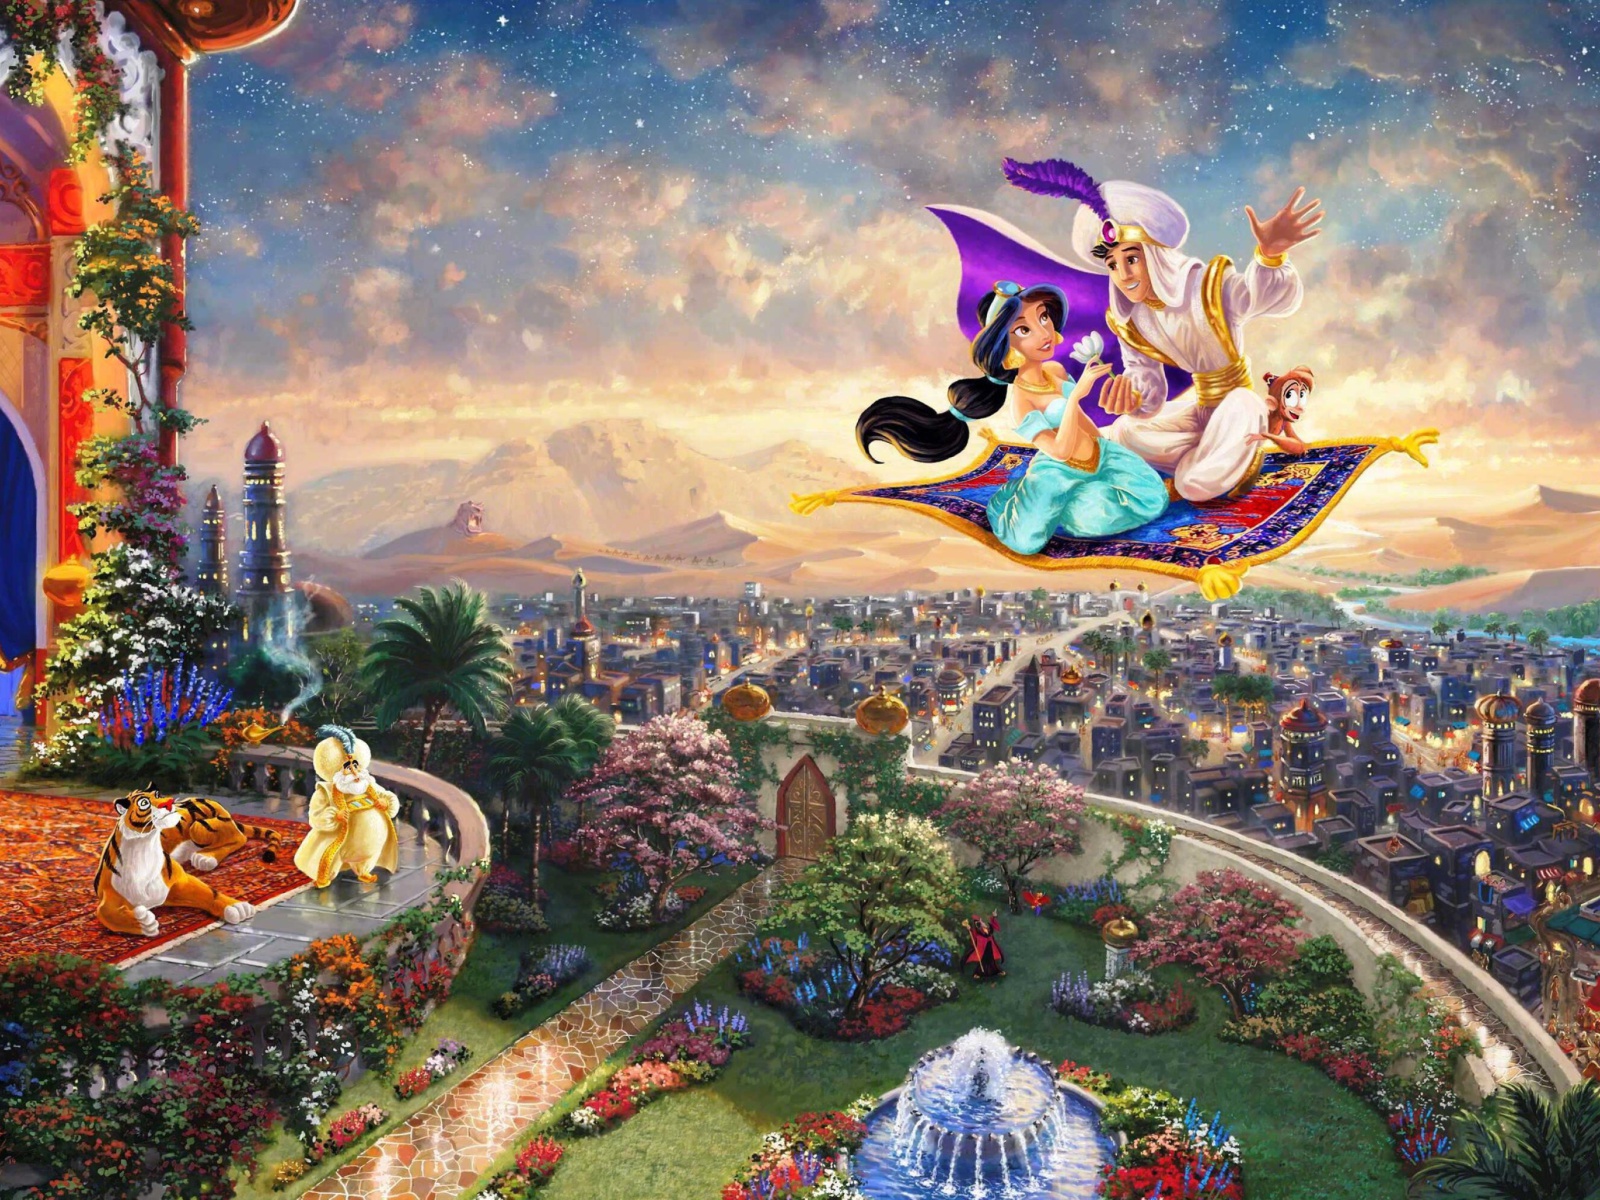 Aladdin wallpaper 1600x1200